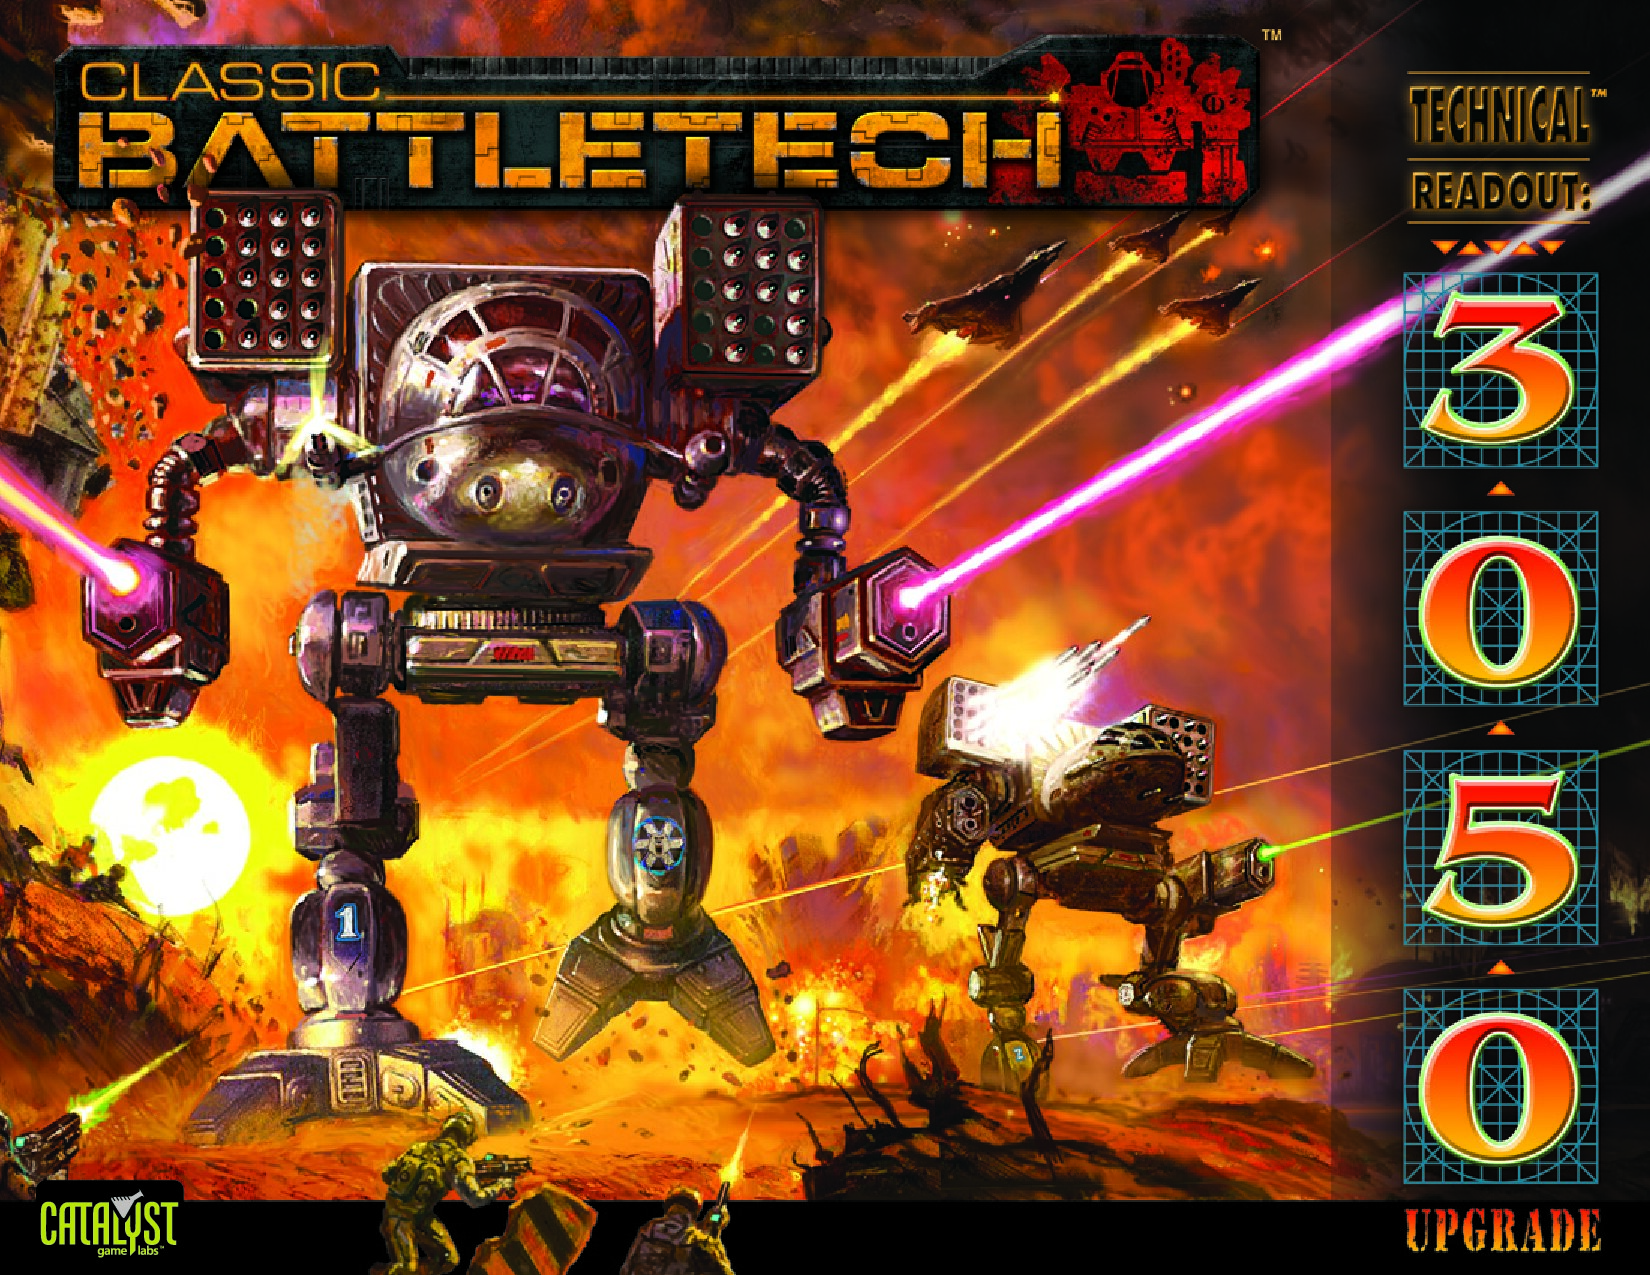 Classic Battletech Technical Readout 3050 Upgrade